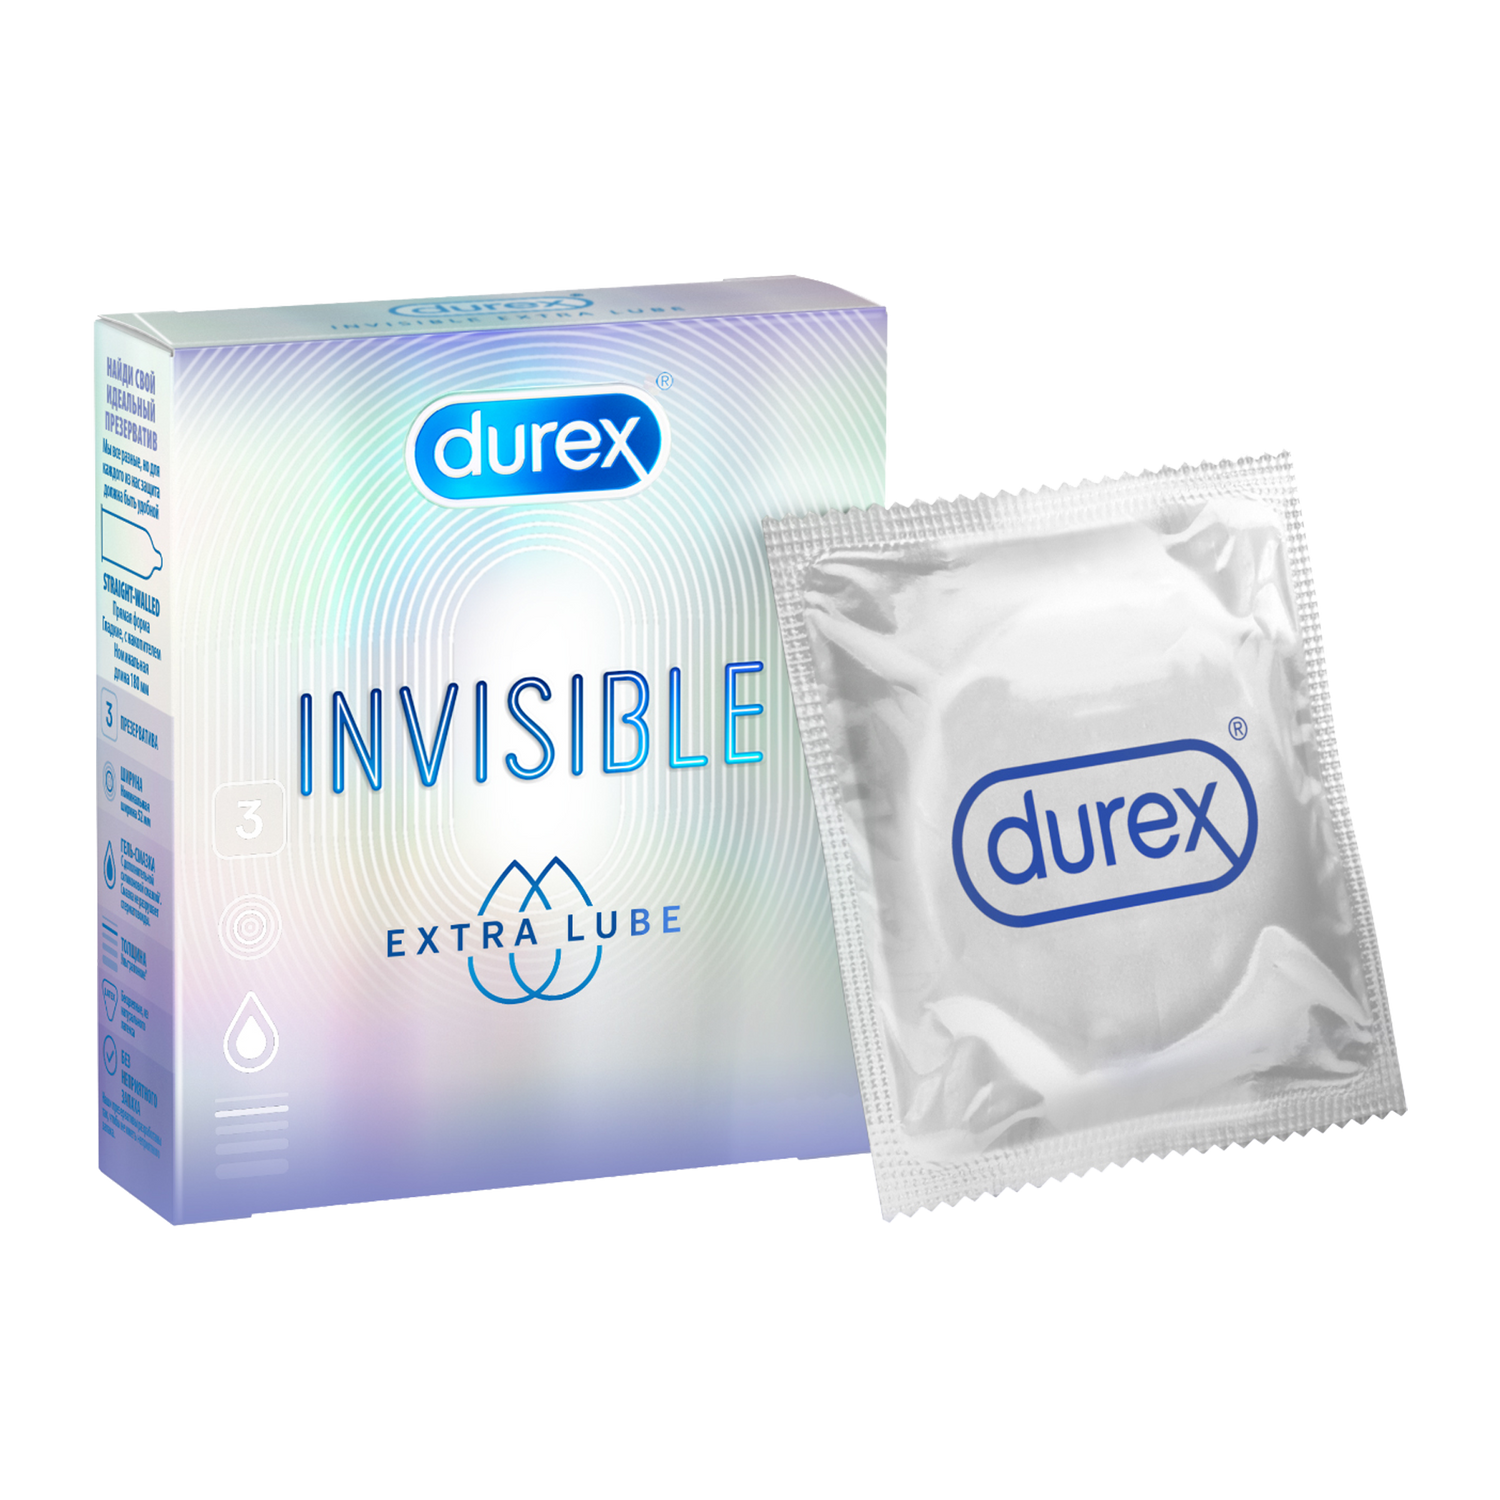 Презервативы Durex Invisible Extra Lube, 3 шт. презервативы из натурального латекса extra lube invisible durex дюрекс 3шт